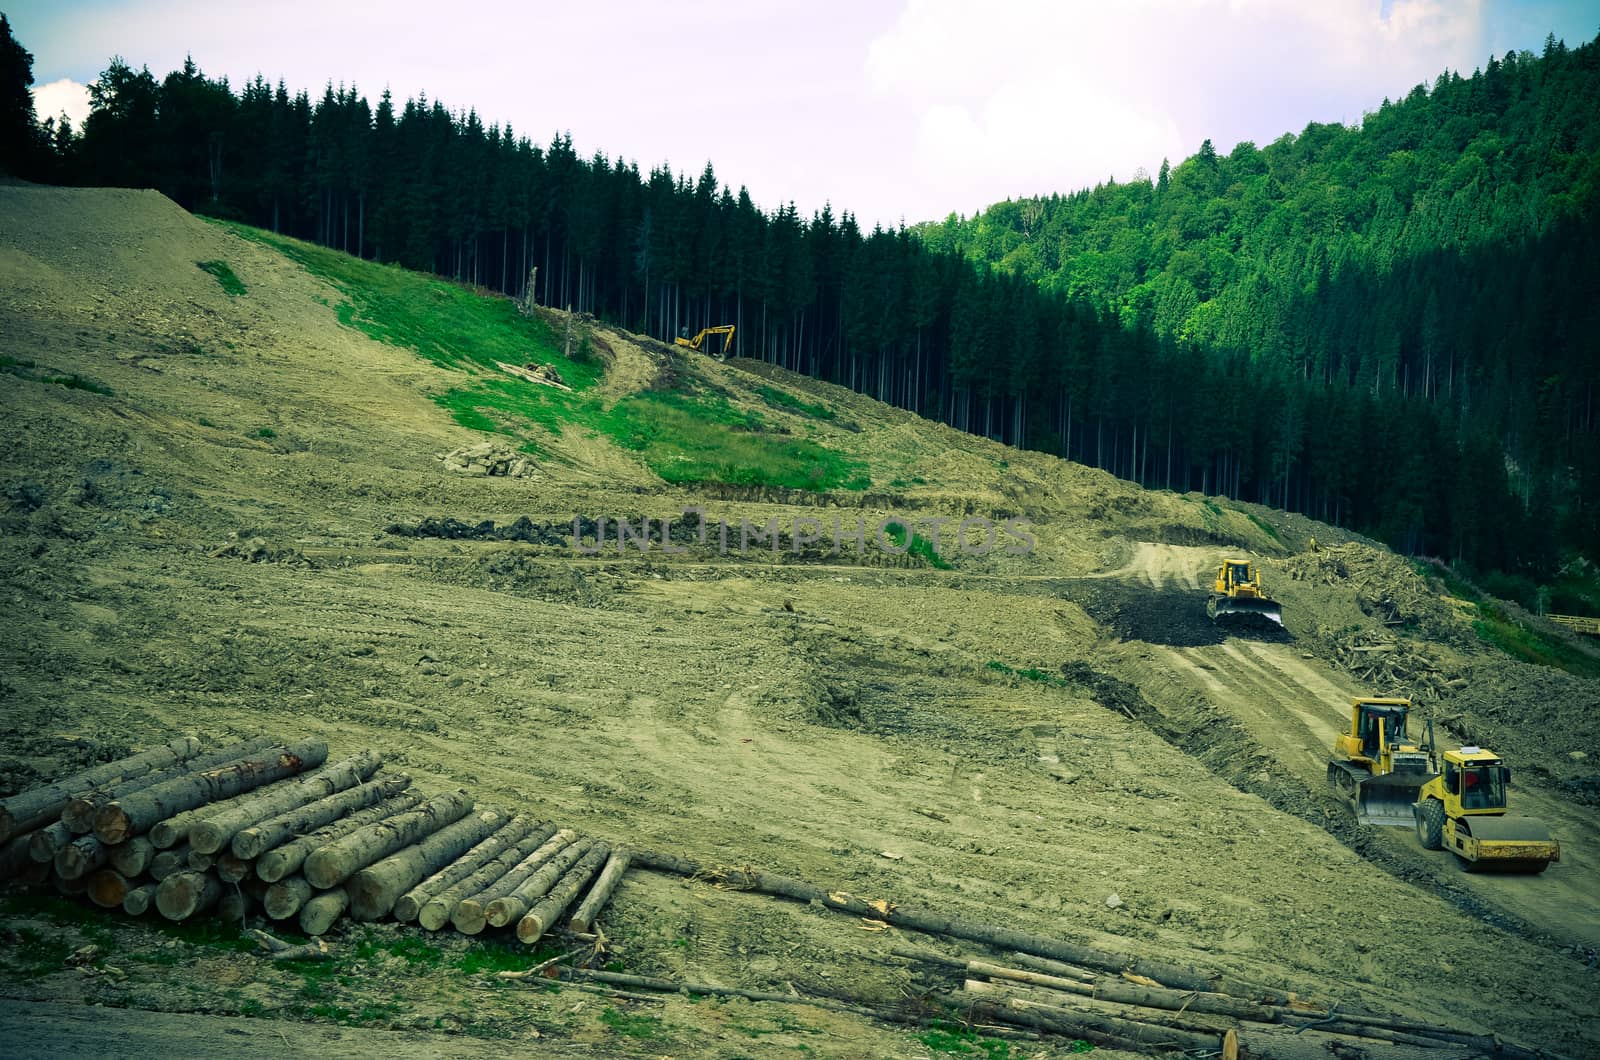 Deforestation environmental problem, forest destroyed for building resort, Bukovel, Ukraine